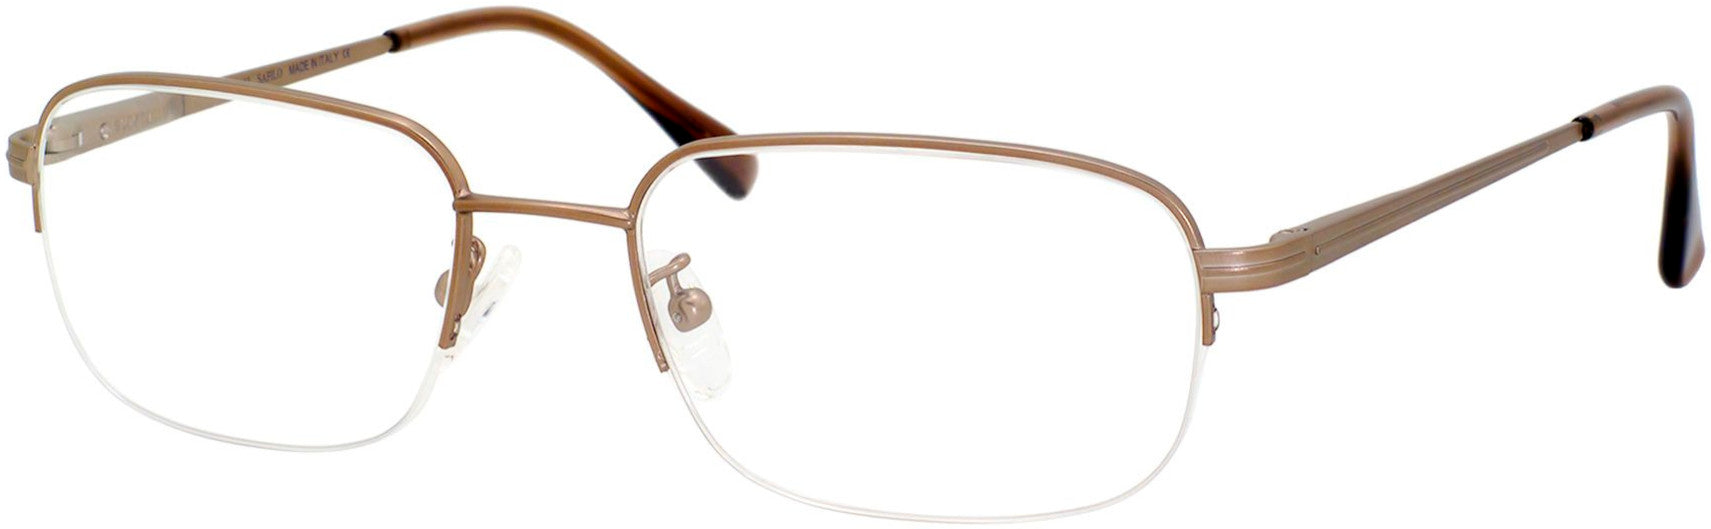  Elasta 7103 Rectangular Eyeglasses 07ZB-07ZB  Gold Ash (00 Demo Lens)